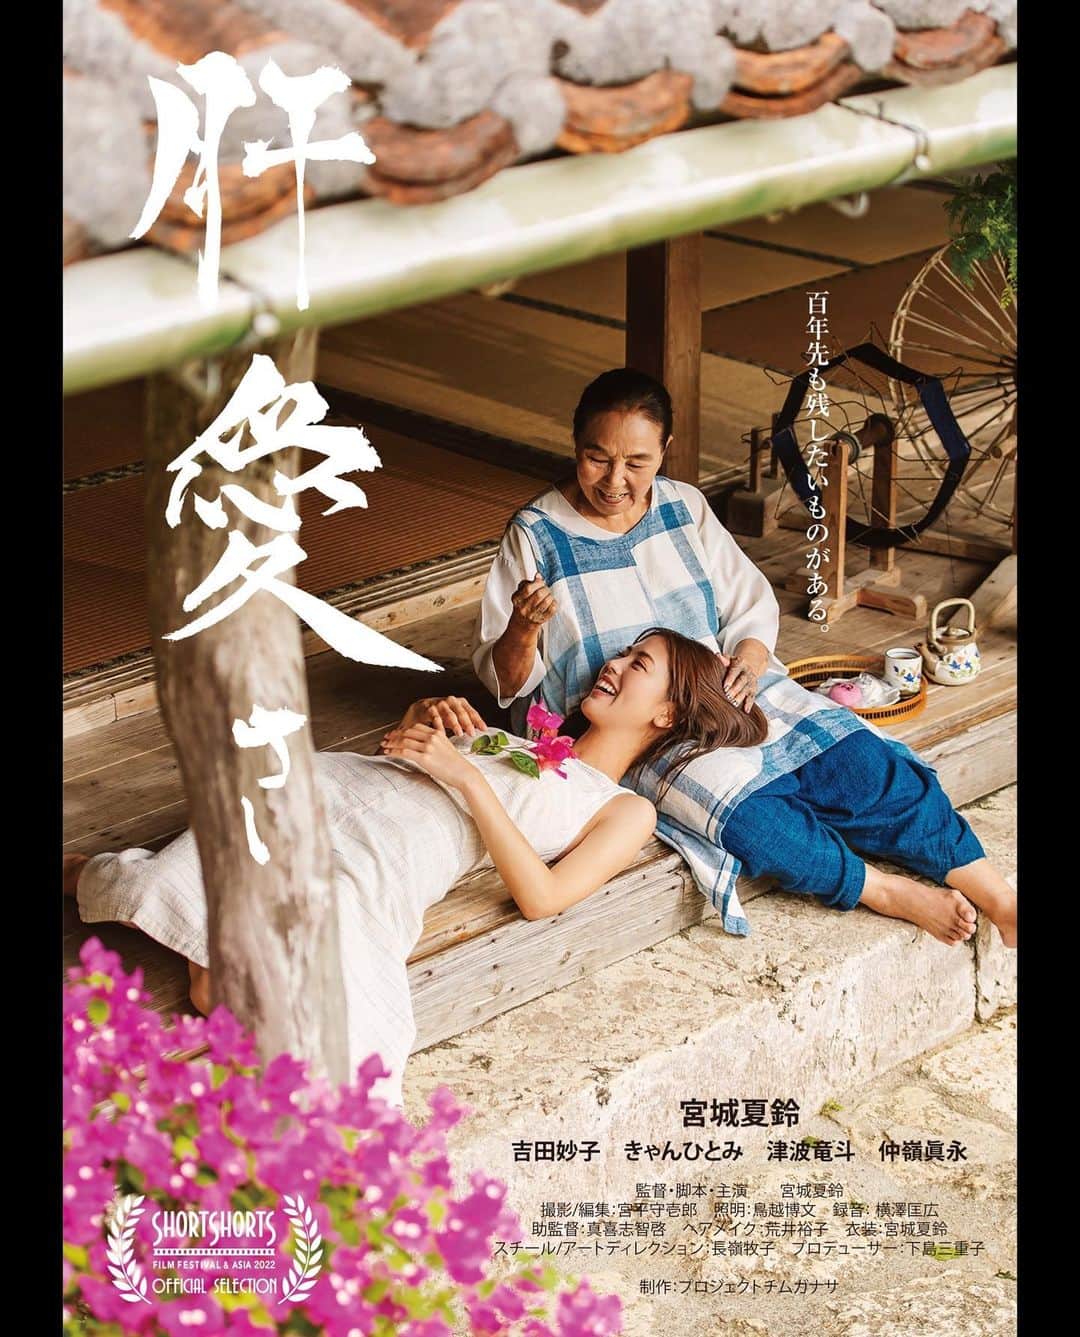 宮城夏鈴のインスタグラム：「🔥Big news🔥　 Short film 『肝愛さ-CHIMUGANASA-』 I'm so excited to announce the short film I've been working on as a director& writer nominated for Short Short Film Festival & Asia! 🌸 The film title is "Chimuganasa"story is about family love and culture of Okinawa, where I was born and raised🌴❤️  宮城夏鈴初監督•脚本•主演作品 短編映画「肝愛さ」  ㊗️ショートショート フィルムフェスティバル & アジア 2022ジャパン部門入選報告&初上映の告知をさせて頂きます！  2022年6月7日から始まるショートショートフィルムフェスティバル東京開催を皮切りに、日本各地のナショナルツアー、日本国外での開催と展開されてジャパン部門からは、優秀賞が選出されます。  -「肝愛さ」上映スケジュール-  日時：2022.06.10 [Fri] 15:40 – 17:30 会場：Omotesando Hills Space O ※オンライン上映あり チケット予約はHPから  https://shortshorts.org/2022/program/aj/aj-2/chimuganasa/  「肝愛さ」㊗️初上映とショートショートノミネートの記念にぜひ会場に足を運んでご覧下さい！また、沖縄での上映も計画しています！引き続き注目して頂けますと幸いです🌸🌸  ーあらすじー  主人公ハナは、色々なものからお休みをもらって、染織工房を営むオバーの住む沖縄の島でのんびりと暮らしていた。  そこにハナの母(サチ)が不慮の知らせを届けに島にやってきて….。 島の風がそよぐ、のんびりとした一日がサチの登場により急変する。家族に突きつけられた「もしも…」。 それぞれに初めて湧き上がってくる感情と向き合う旧盆の3日間。   監督・脚本：宮城夏鈴 出演：宮城夏鈴、吉田妙子、きゃんひとみ、津波竜斗、仲嶺眞永　満名匠吾 他 プロデューサー 下島三重子  撮影・編集　宮平守壱郎 照明　 鳥越博文 録音　 横澤匡広 助監督 真喜志智啓 ヘアメイク　　荒井裕子 衣装　　宮城夏鈴 美術ディレクション・スチール　長嶺牧子 音楽　望月誉   濱里稔 三線　仲嶺良盛  その他」